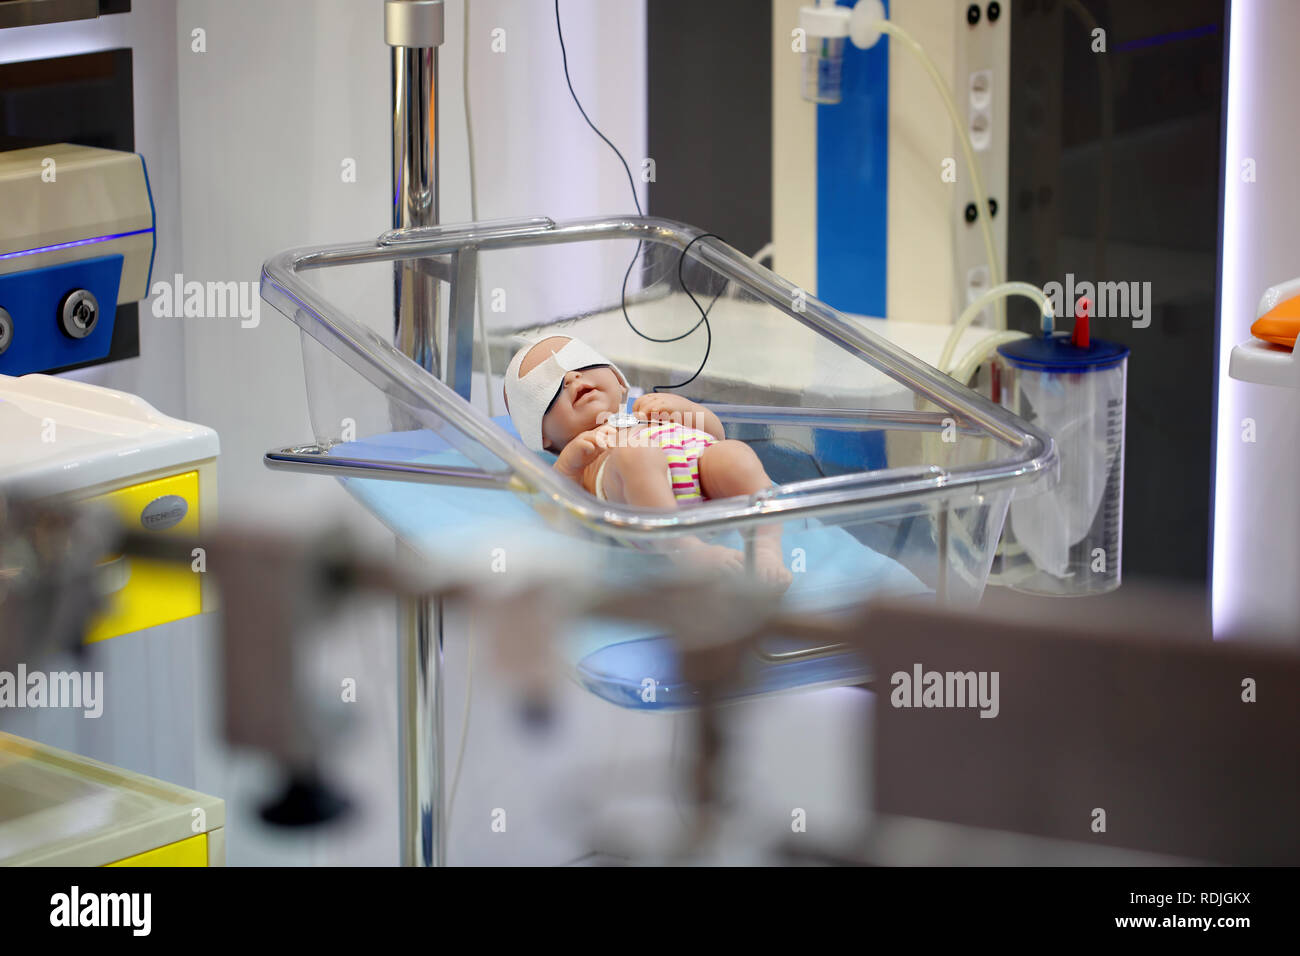 Infant dummy baby Stock Photo